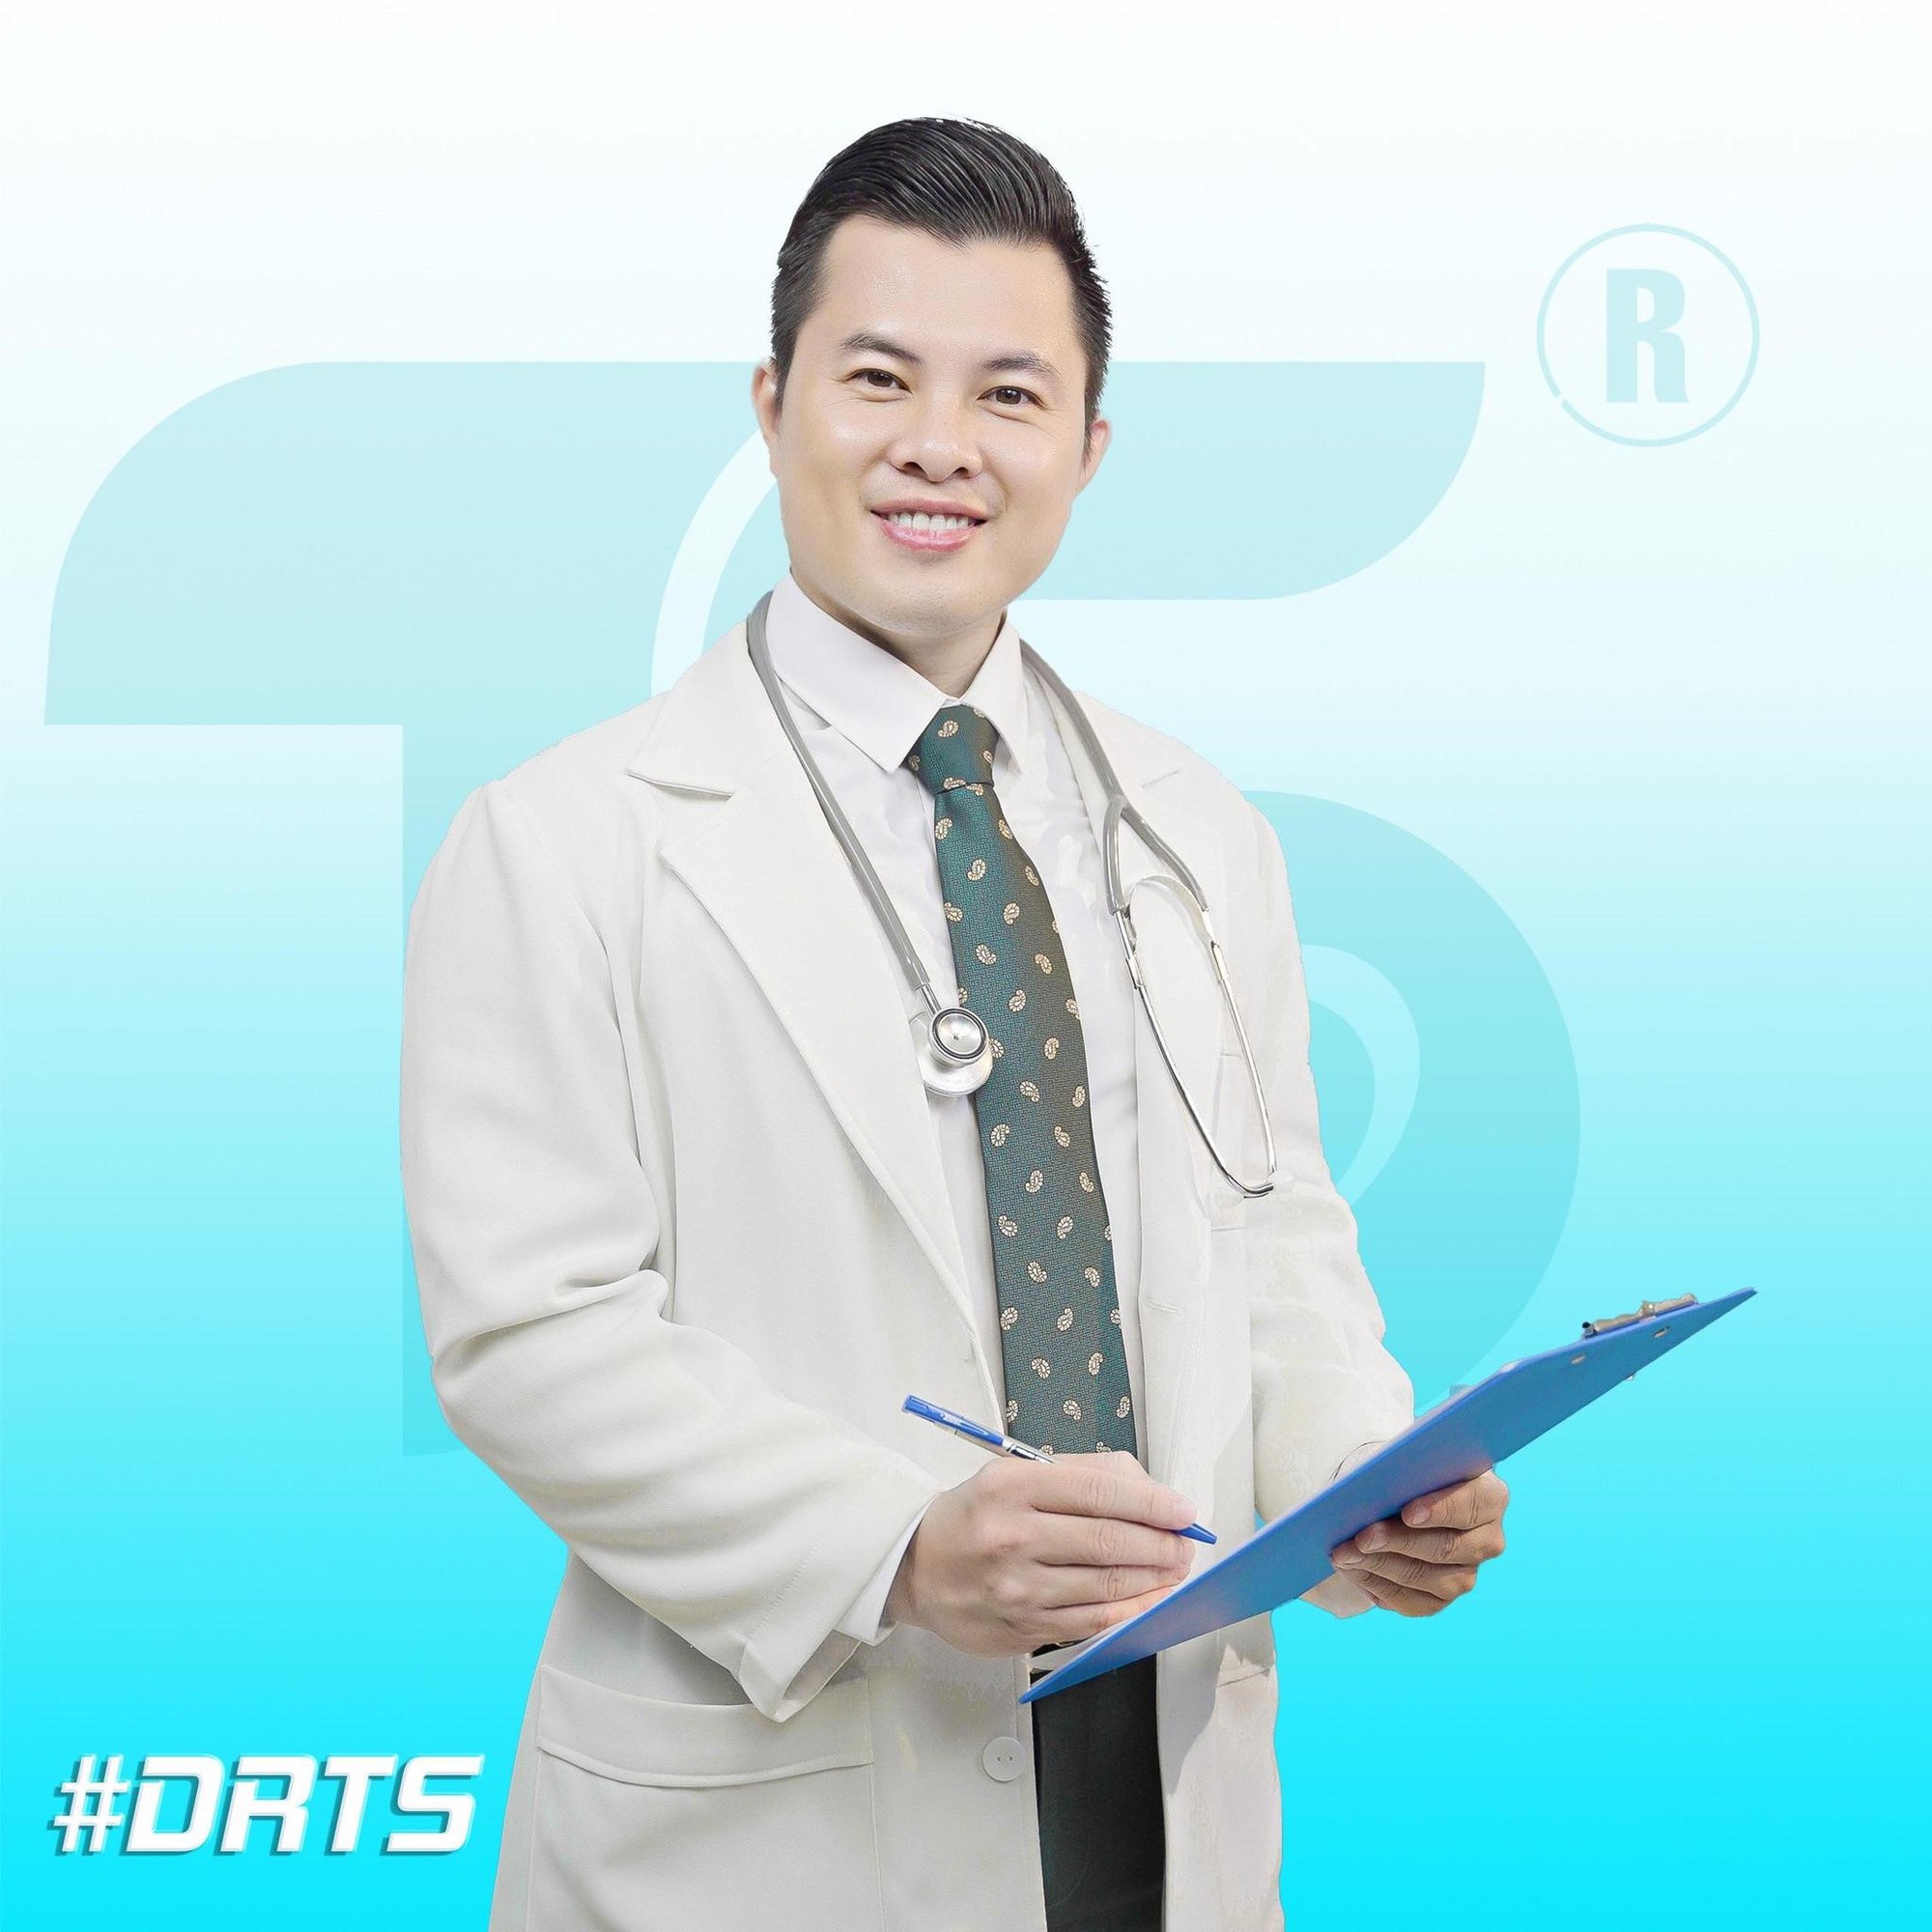 Những điều ít biết về bác sĩ Phạm Thành Sơn của Phòng khám Sản phụ khoa Dr Thành Sơn tại Hà Nội - Ảnh 1.